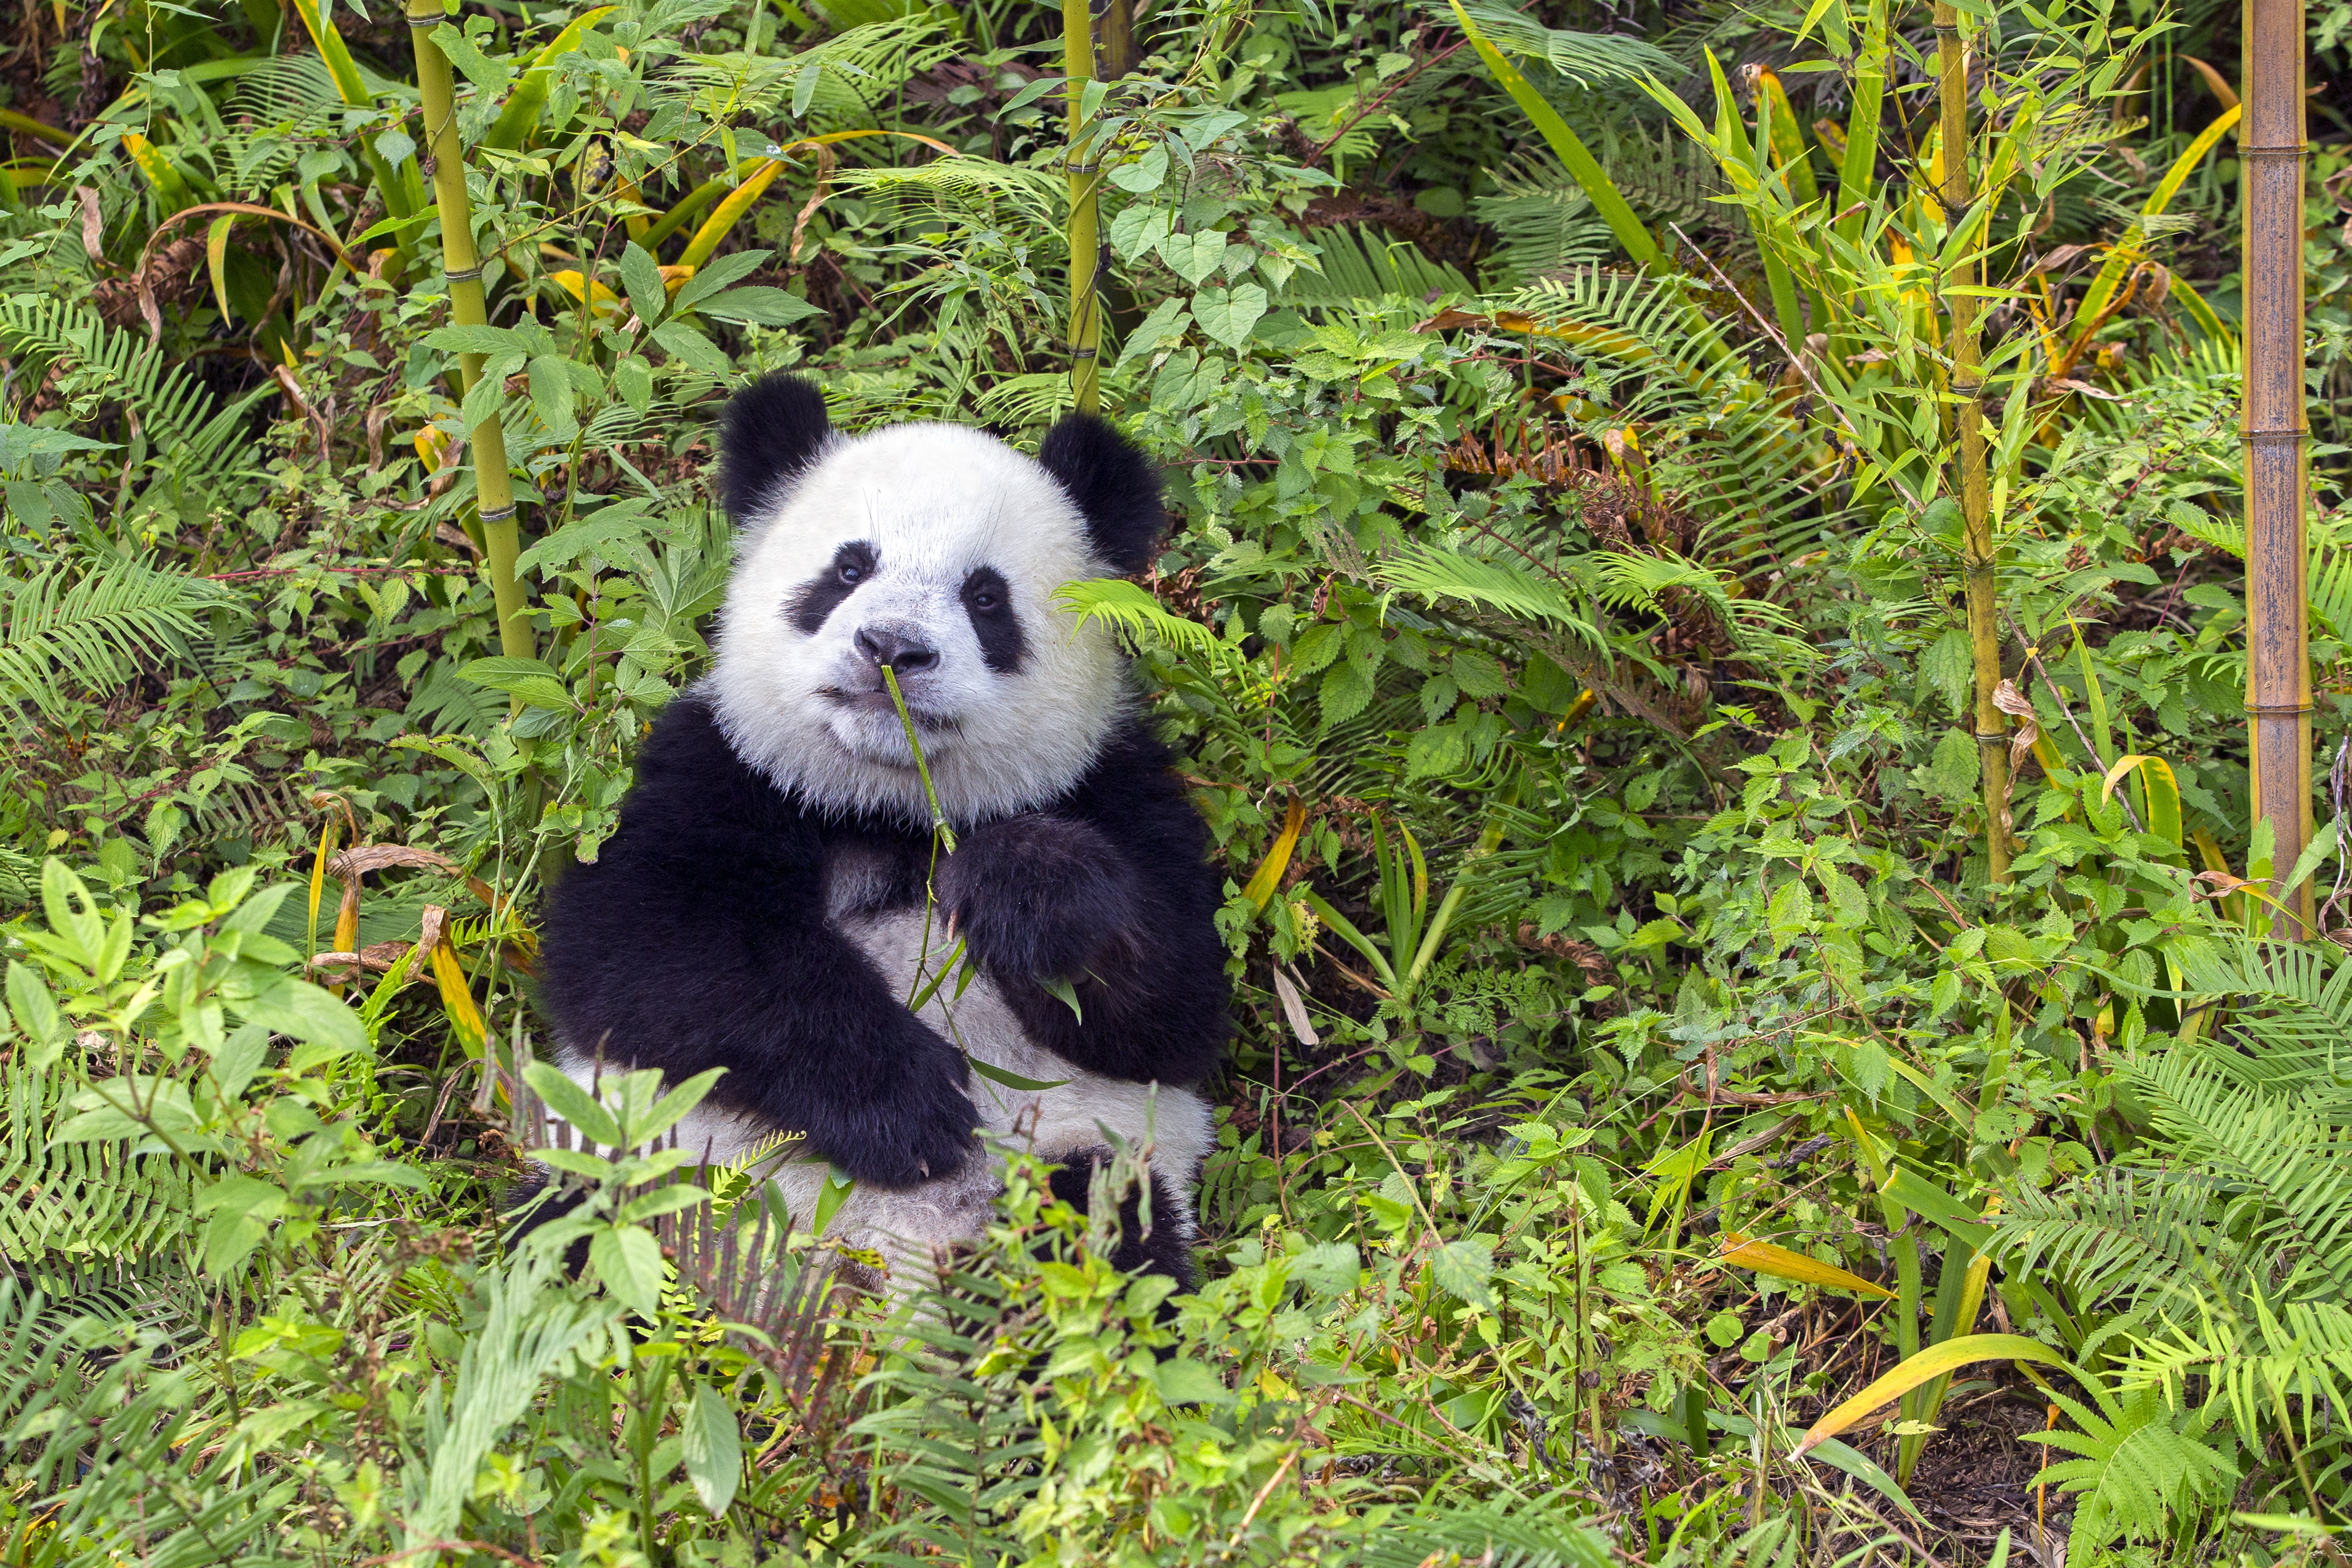 Hiszik vagy sem, de a pandák rejtőzködni próbálnak feltűnő bundájukban